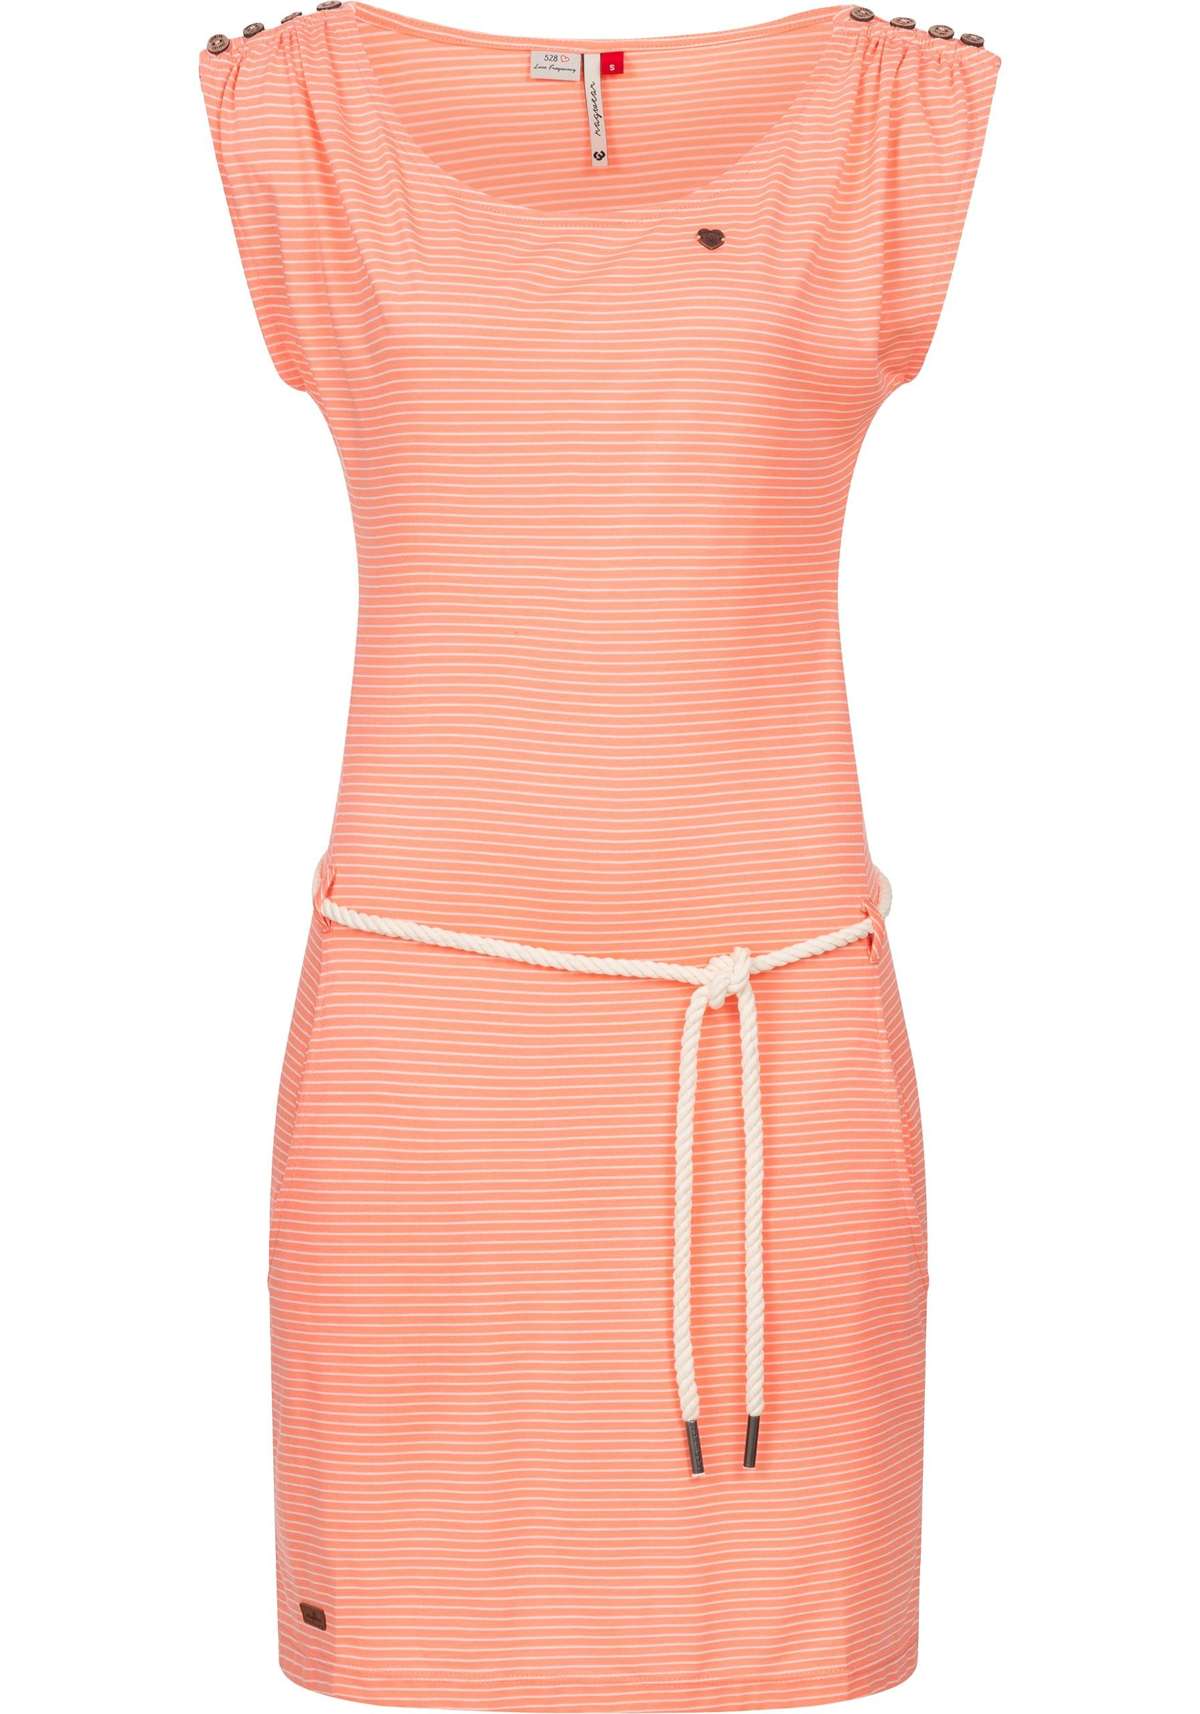 Платье-рубашка, стильное летнее платье с полосатым узором.